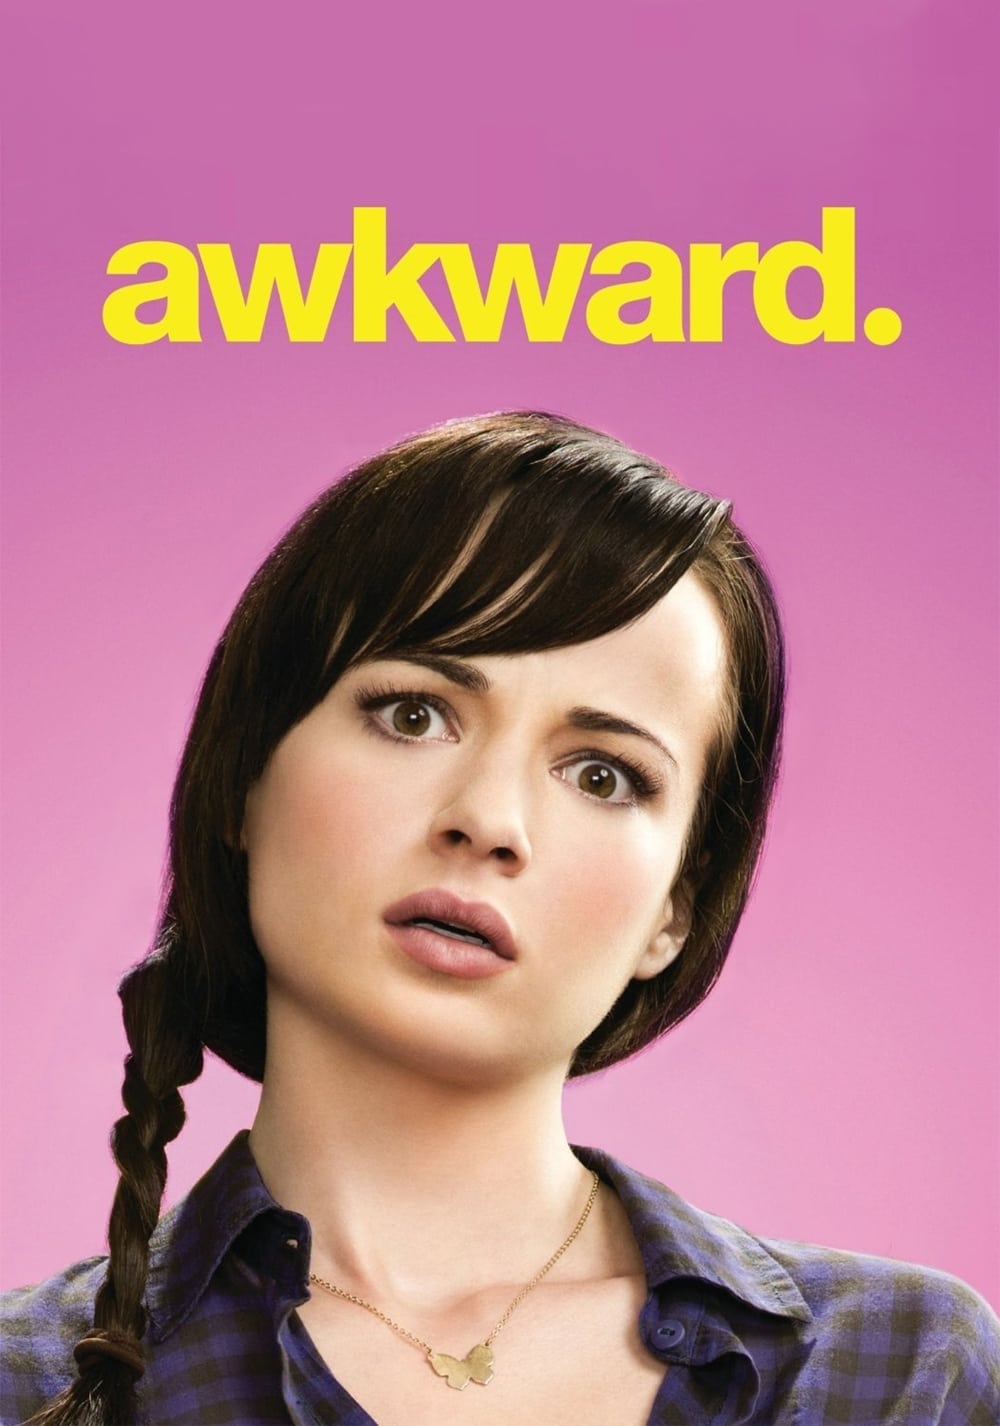 Awkward. (2011)